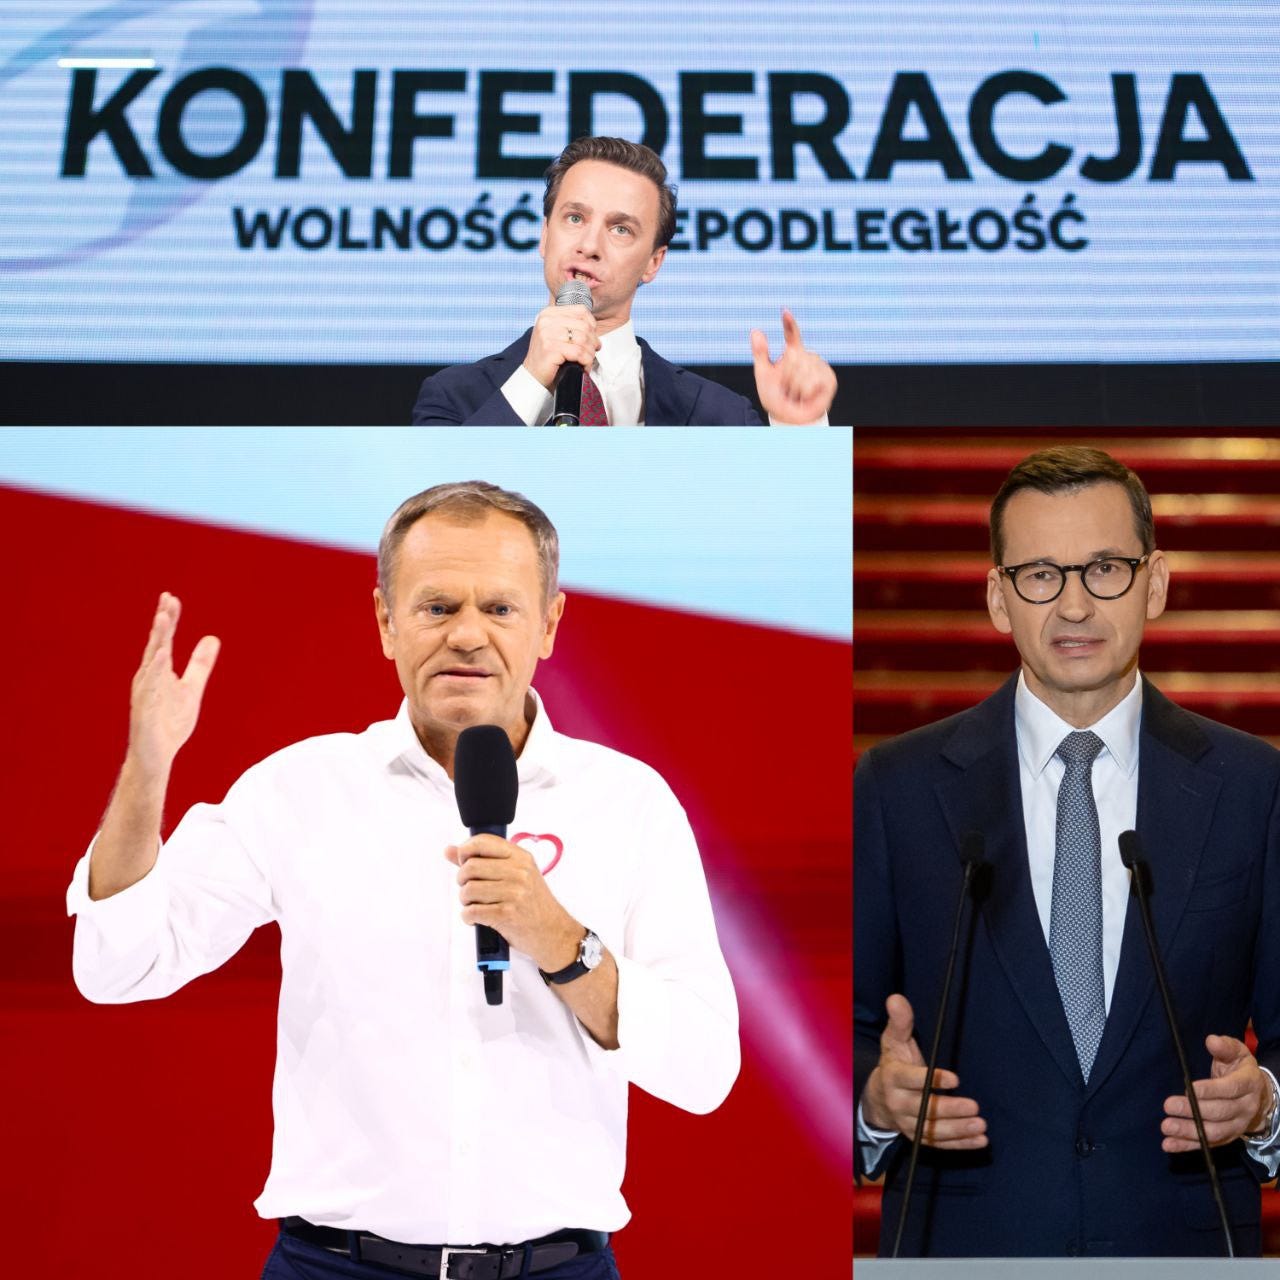 Polish elections